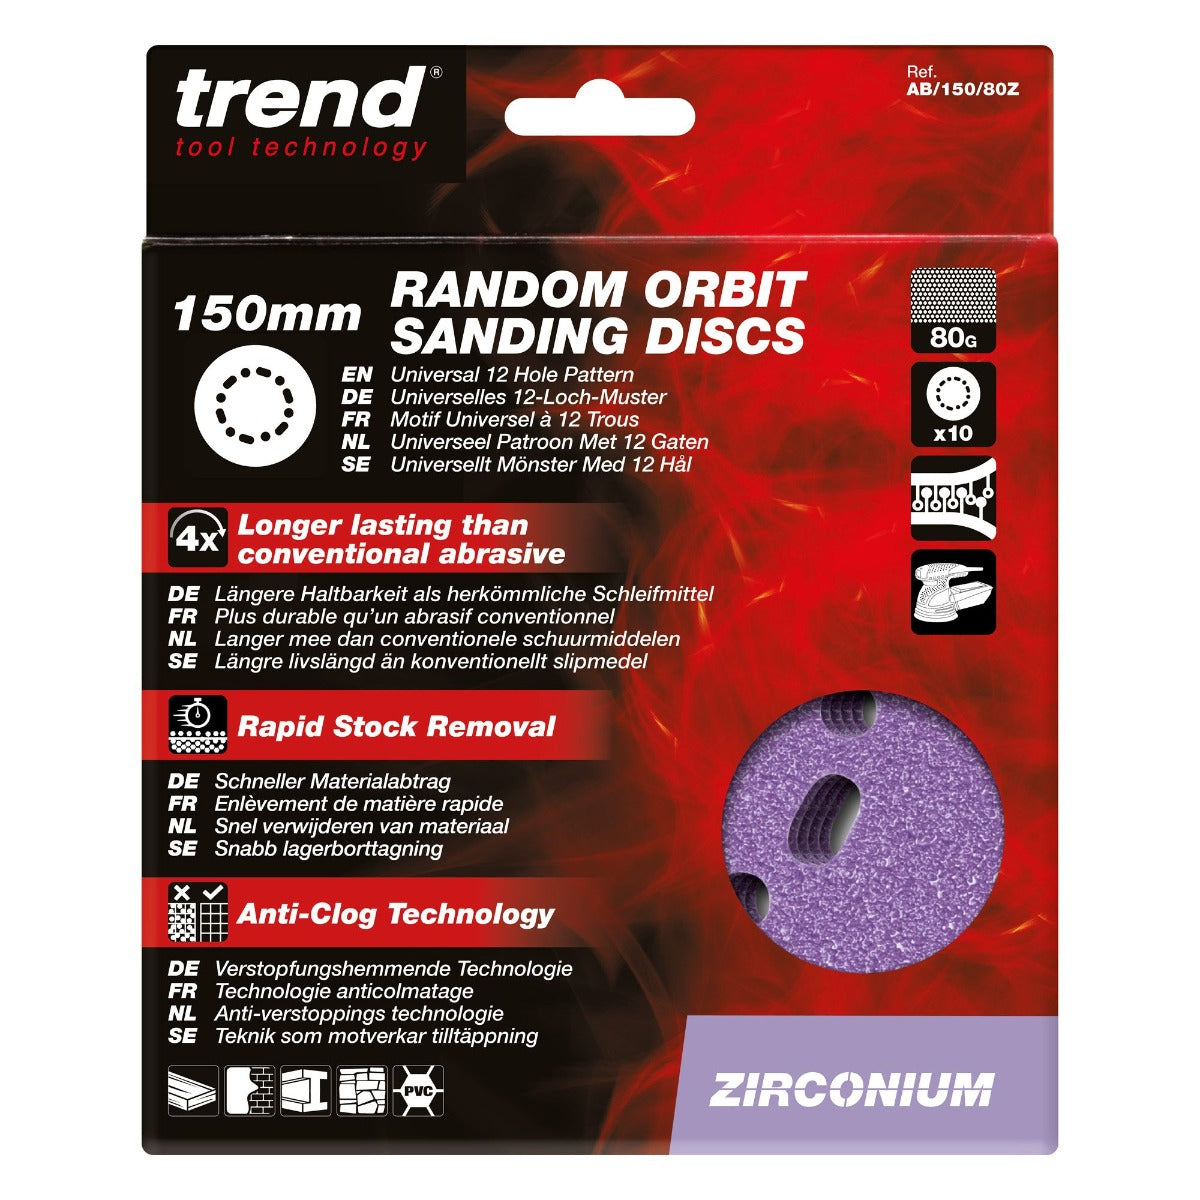 Trend AB/150/80Z Zirconium Random Orbital Sanding Disc 150mm 80 grit (10 Pack)